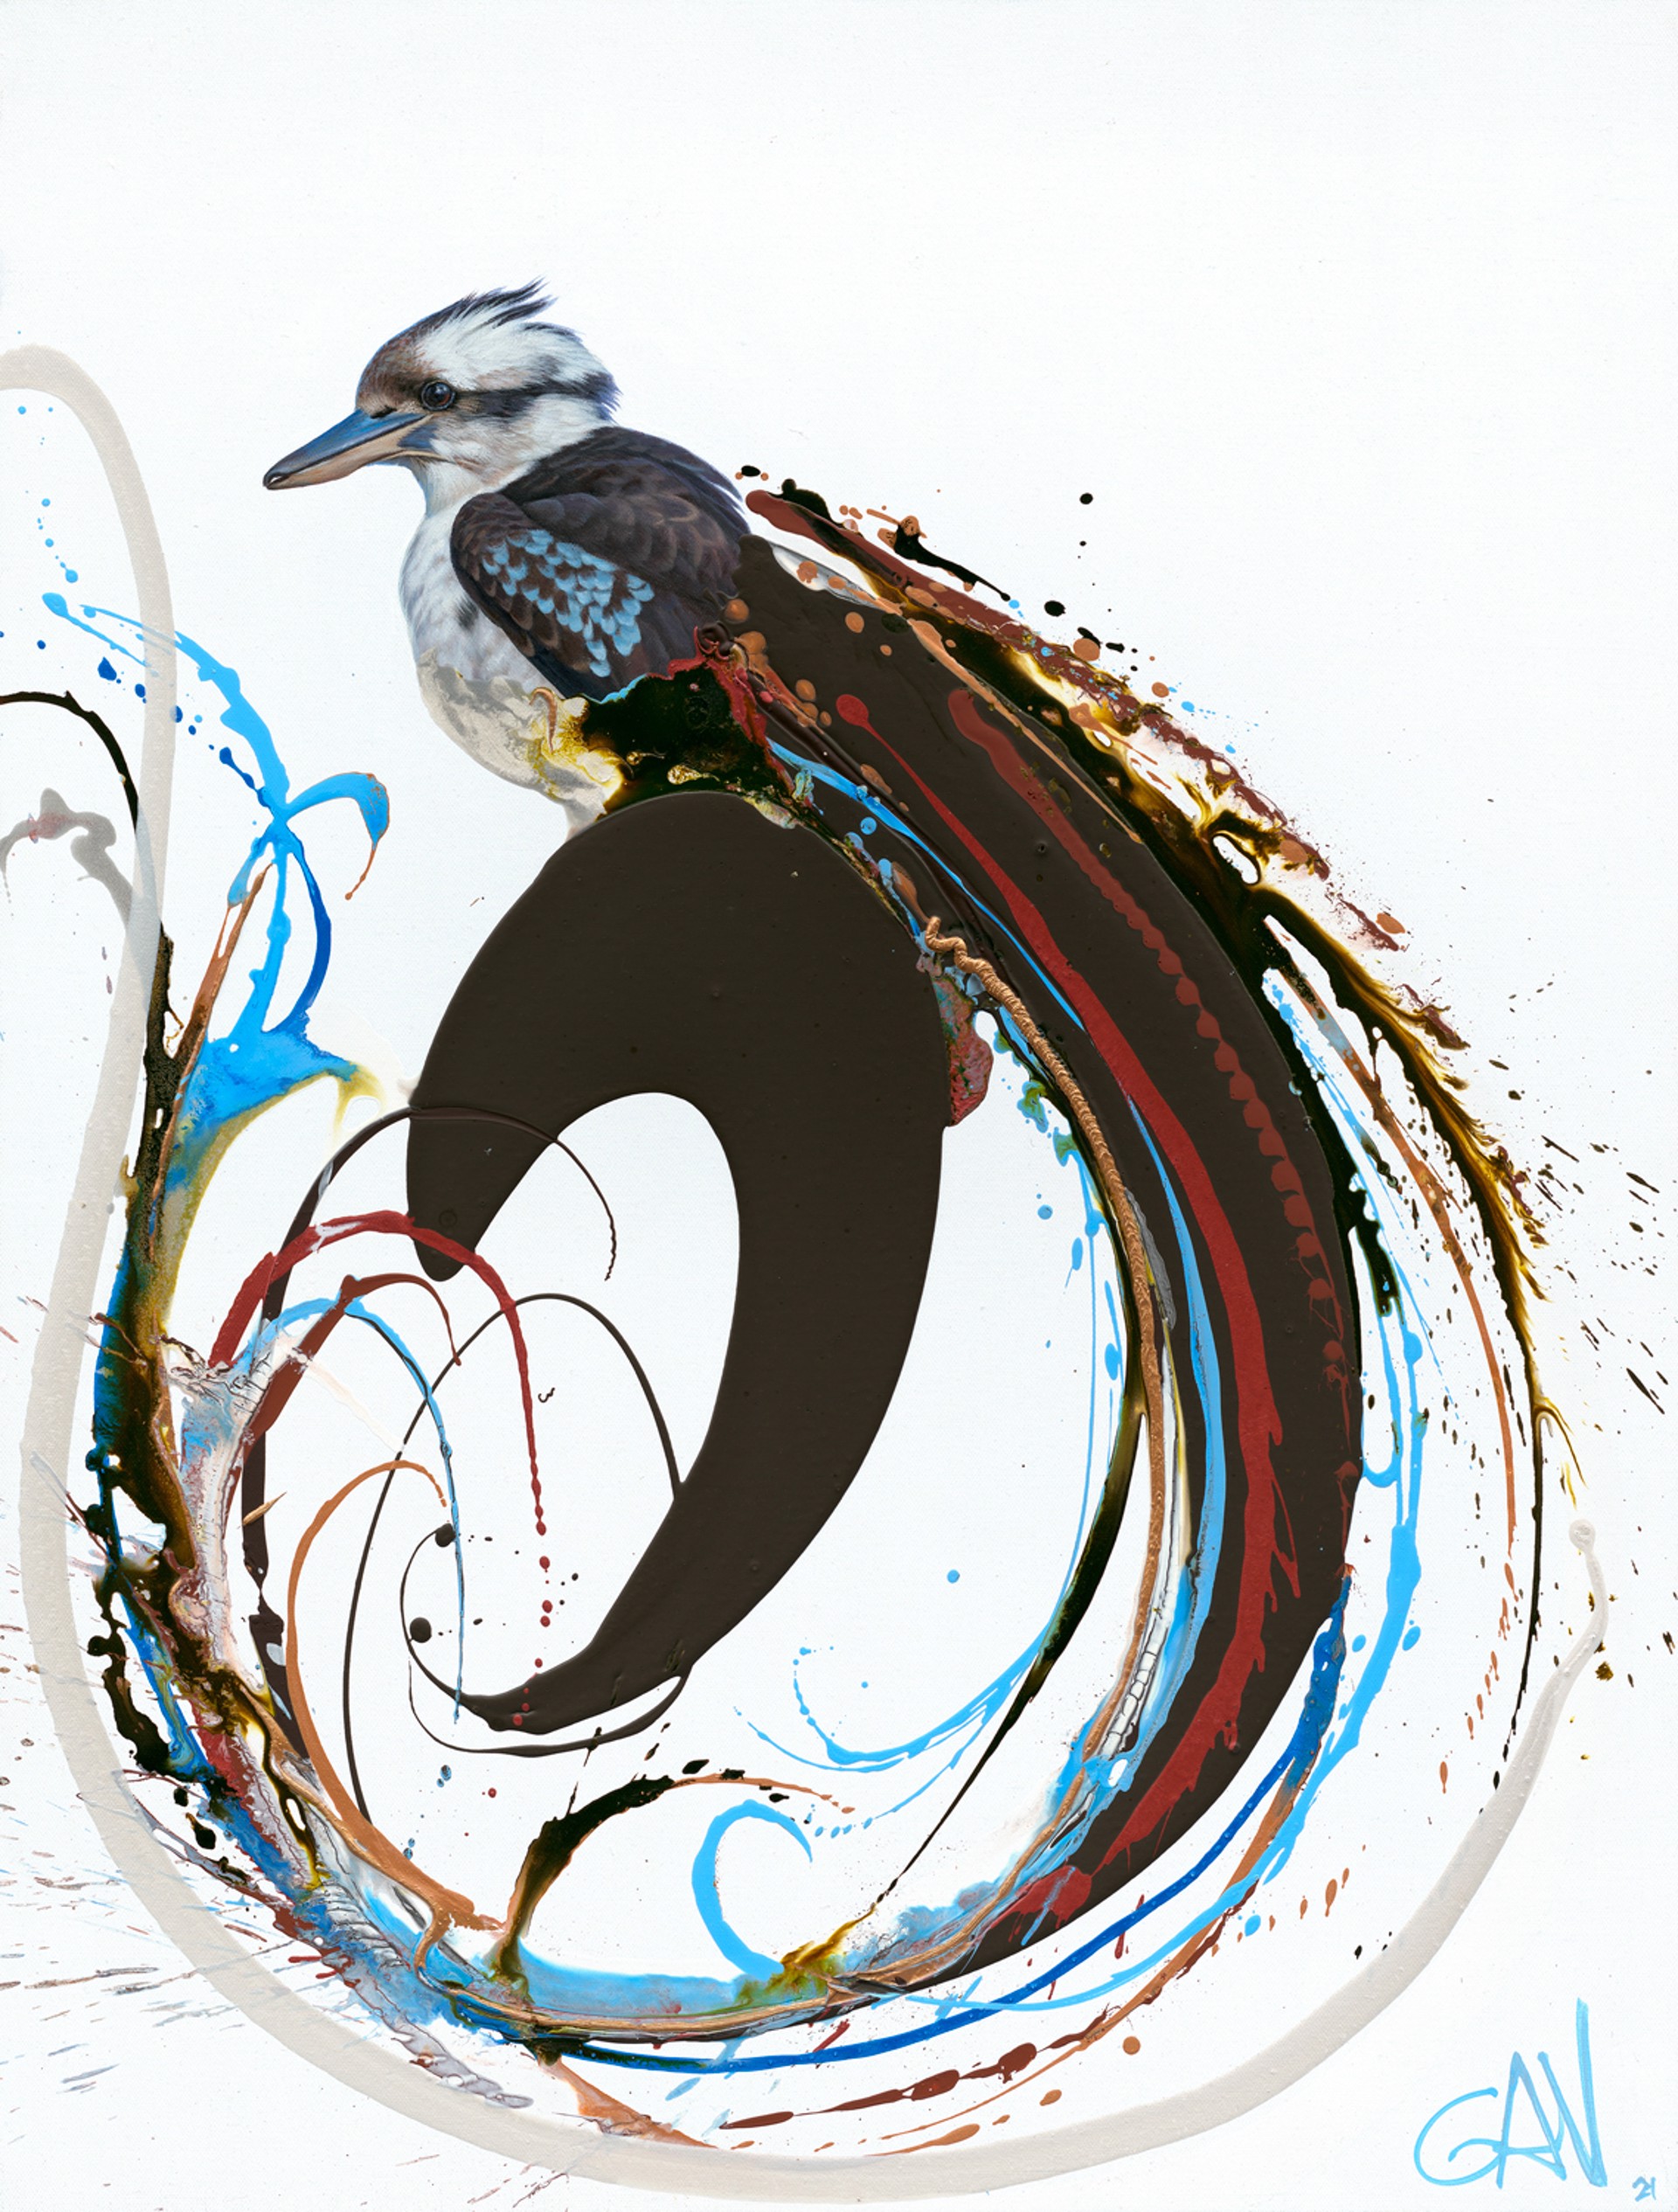 Kookaburra (Edition) by Gav Barbey